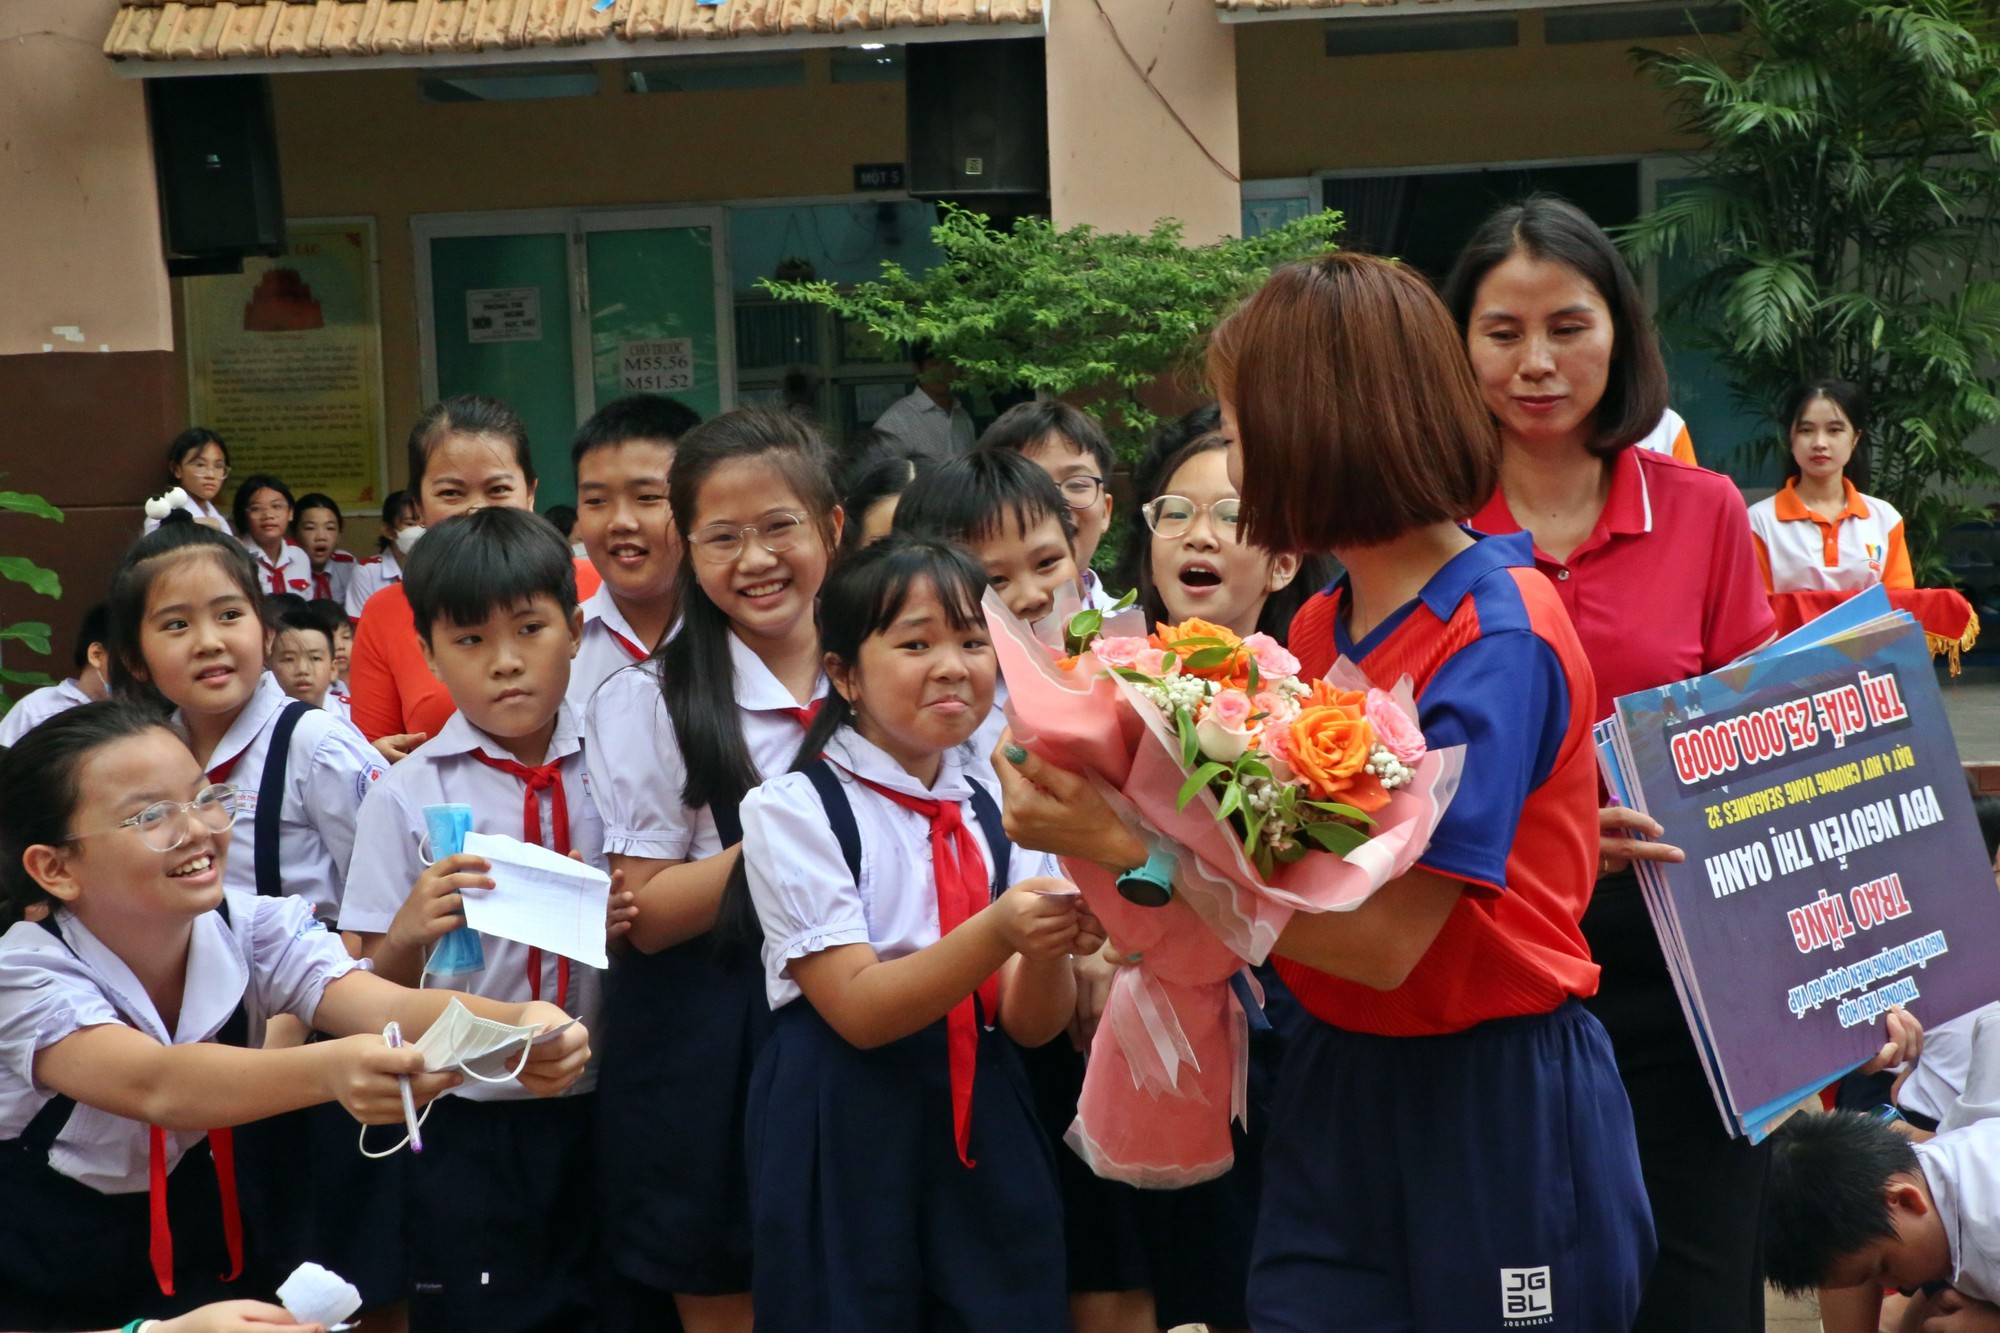 Nguyễn Thị Oanh đến truyền cảm hứng cho các bạn nhỏ trường Nguyễn Thượng Hiền, TP.HCM - Ảnh 10.